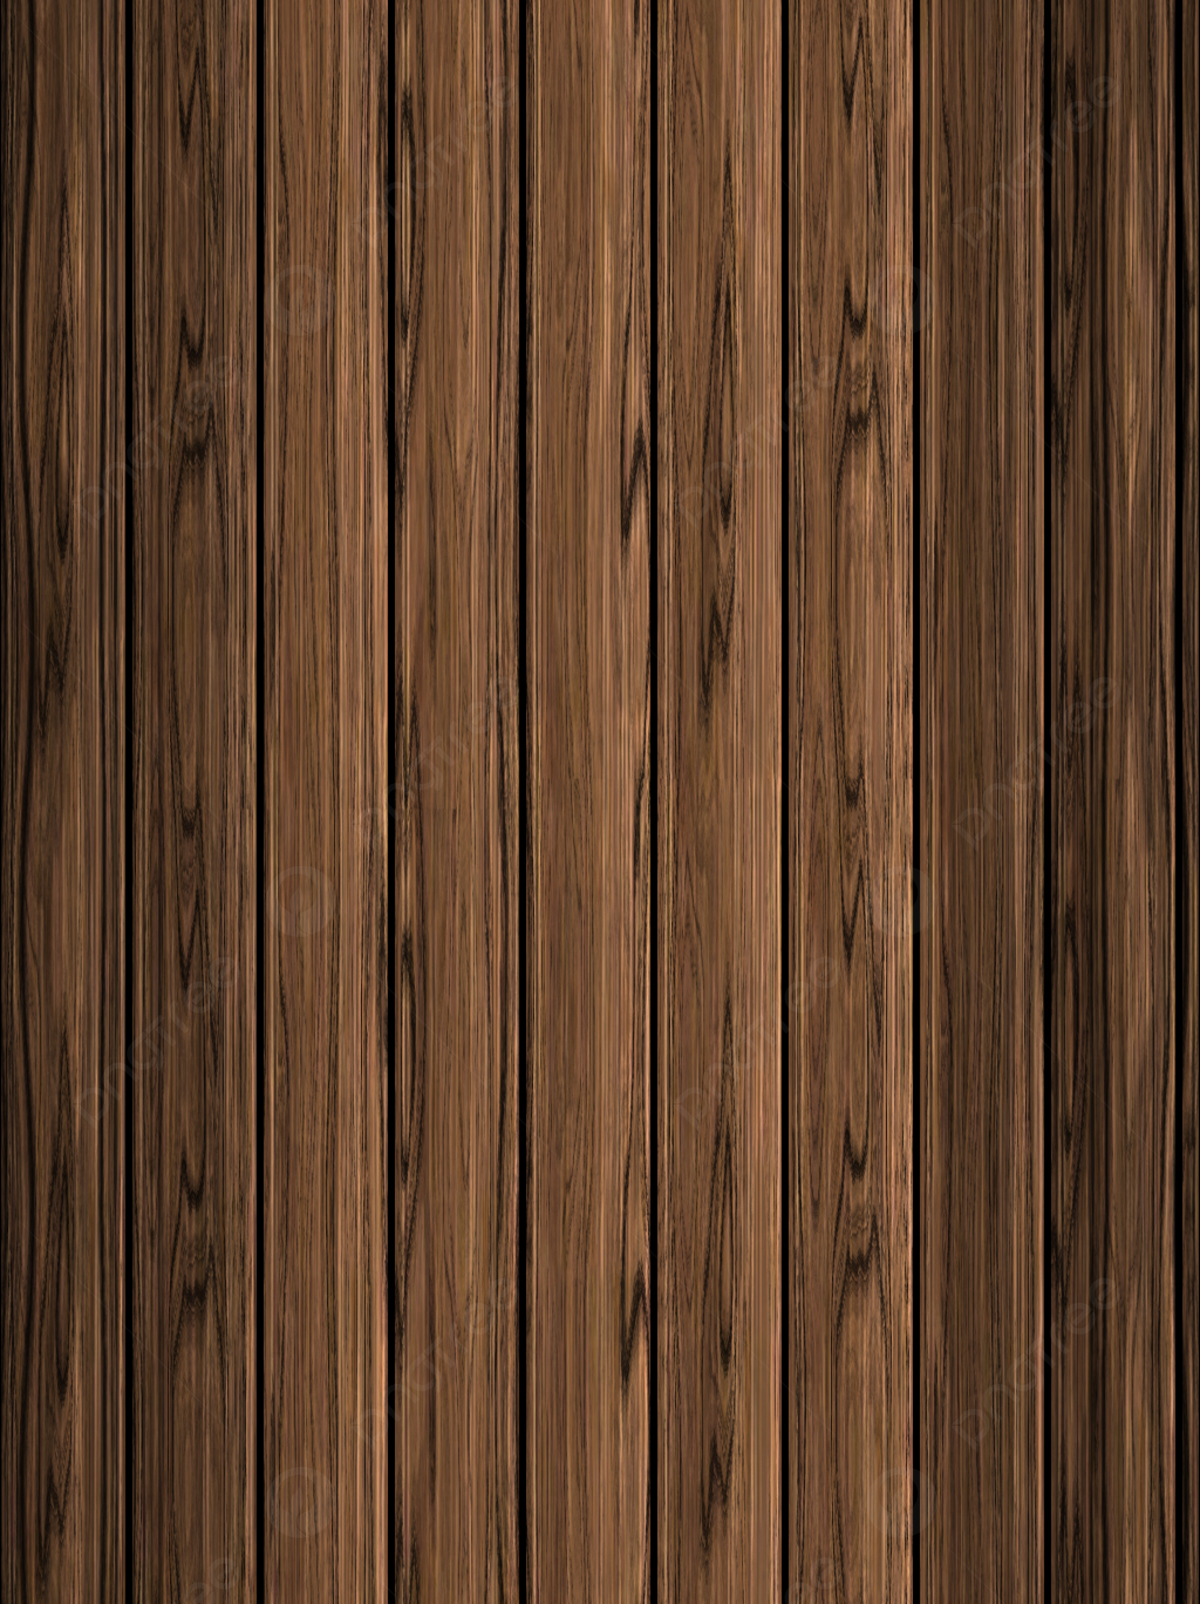  Holz Hintergrundbild 1200x1604. Holz Hintergrund Hintergrundbild zum kostenlosen Download